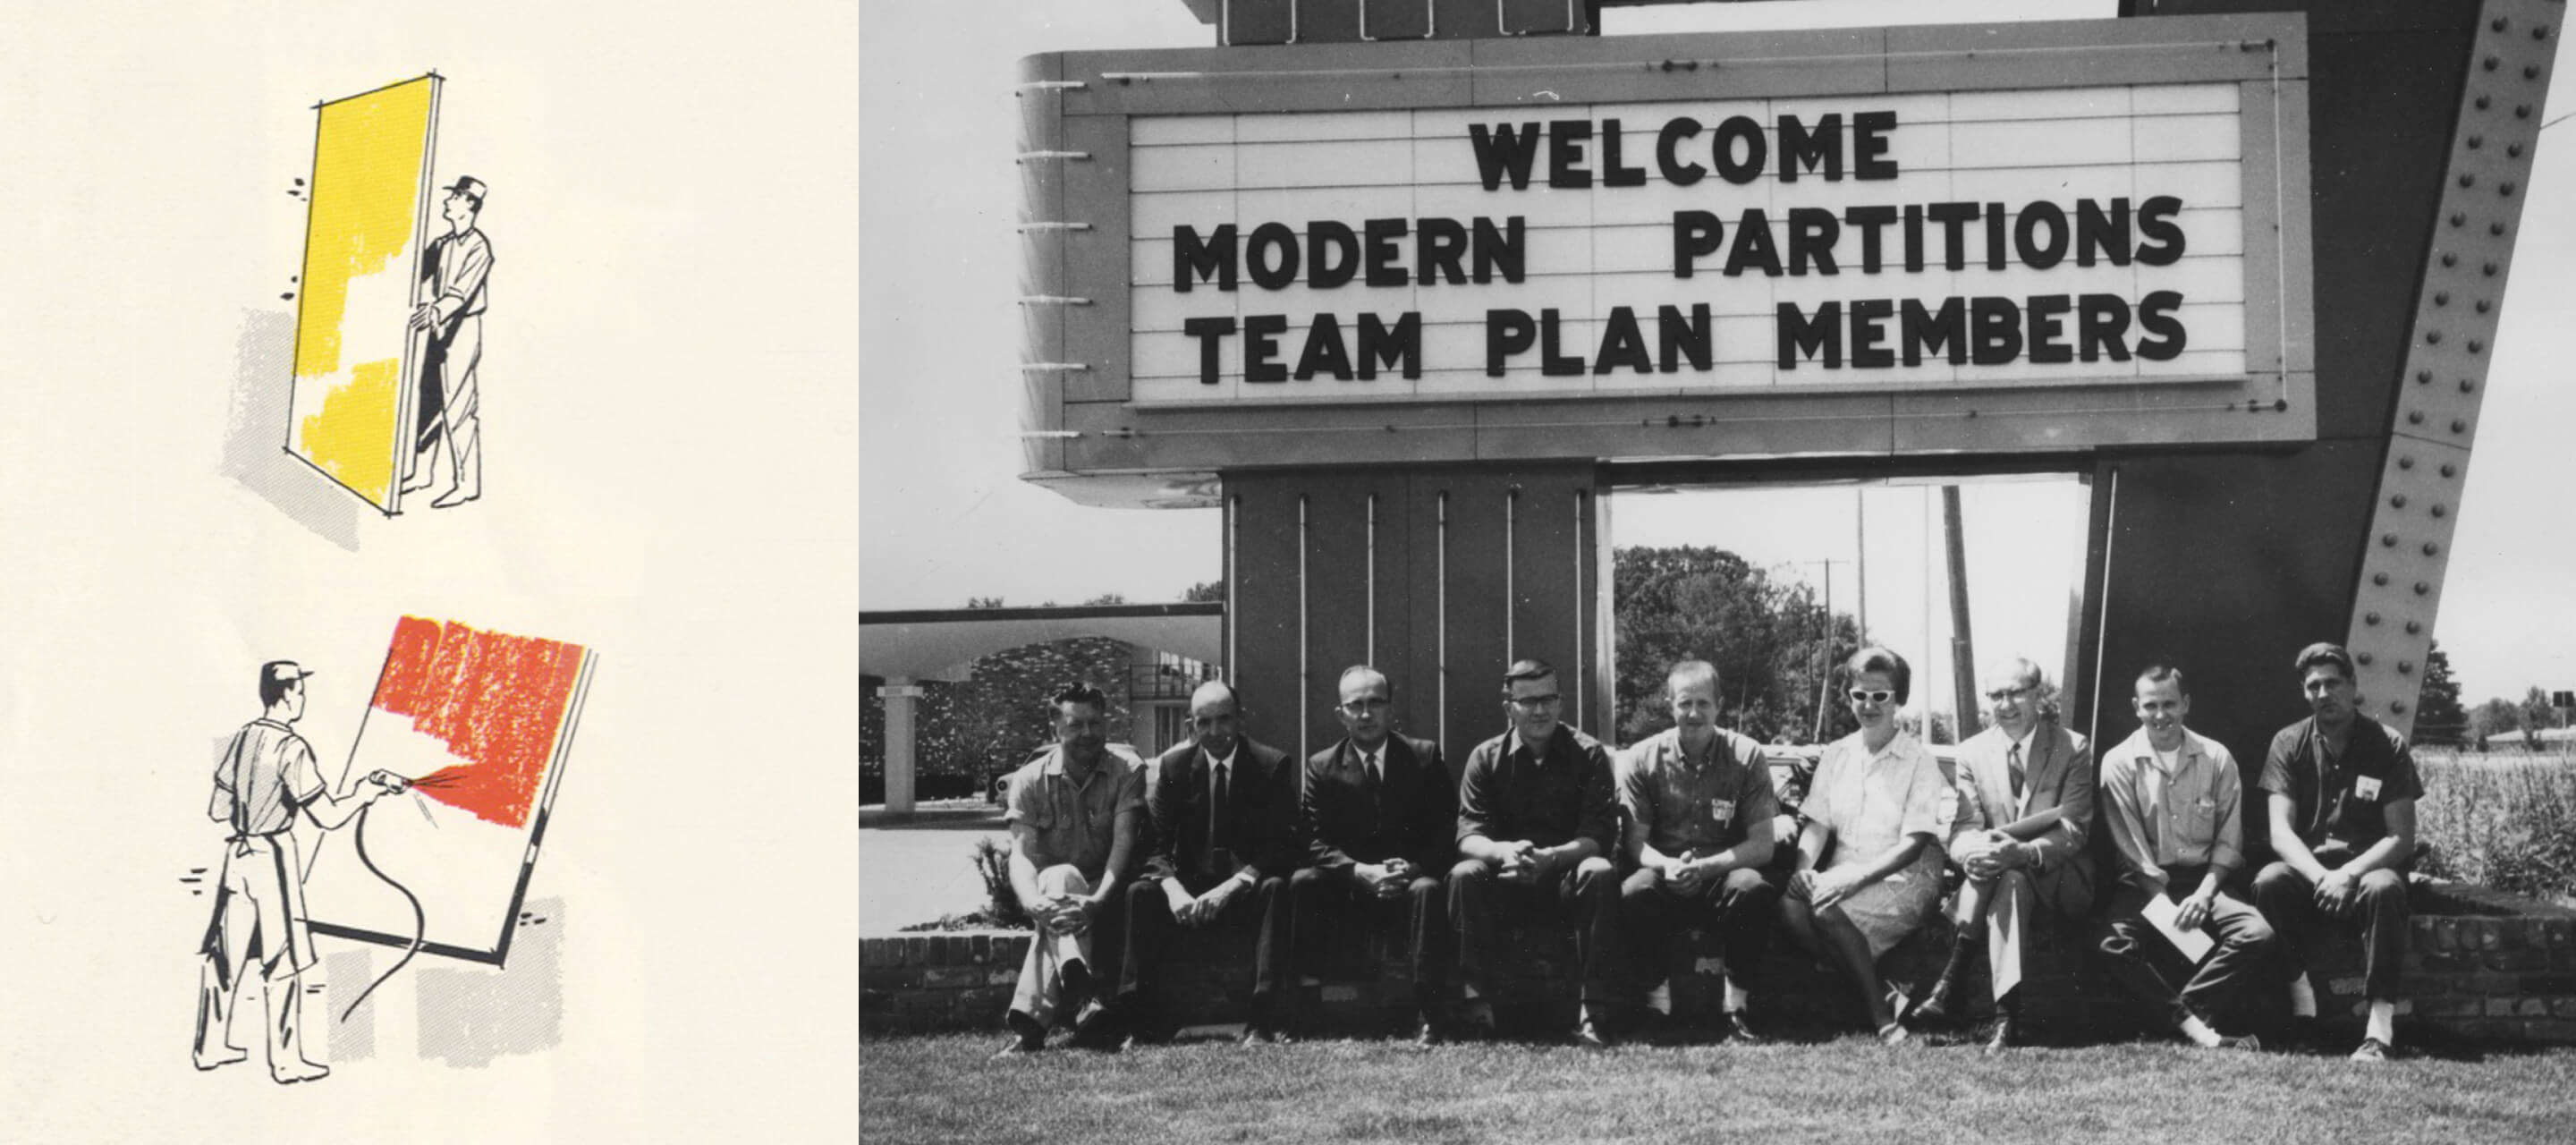 1950年代- 1951年、フリーランスのセールスマンがバンクスタイルのパーティションのスケッチをデトロイトにあるUnited Auto Workersの本社に宣伝した際、G.W.のフロアから天井まで続く可動式壁への進出が実現しました。こうして、50年代末を迎える前にModern Partitions, Inc.が設立されたのです。